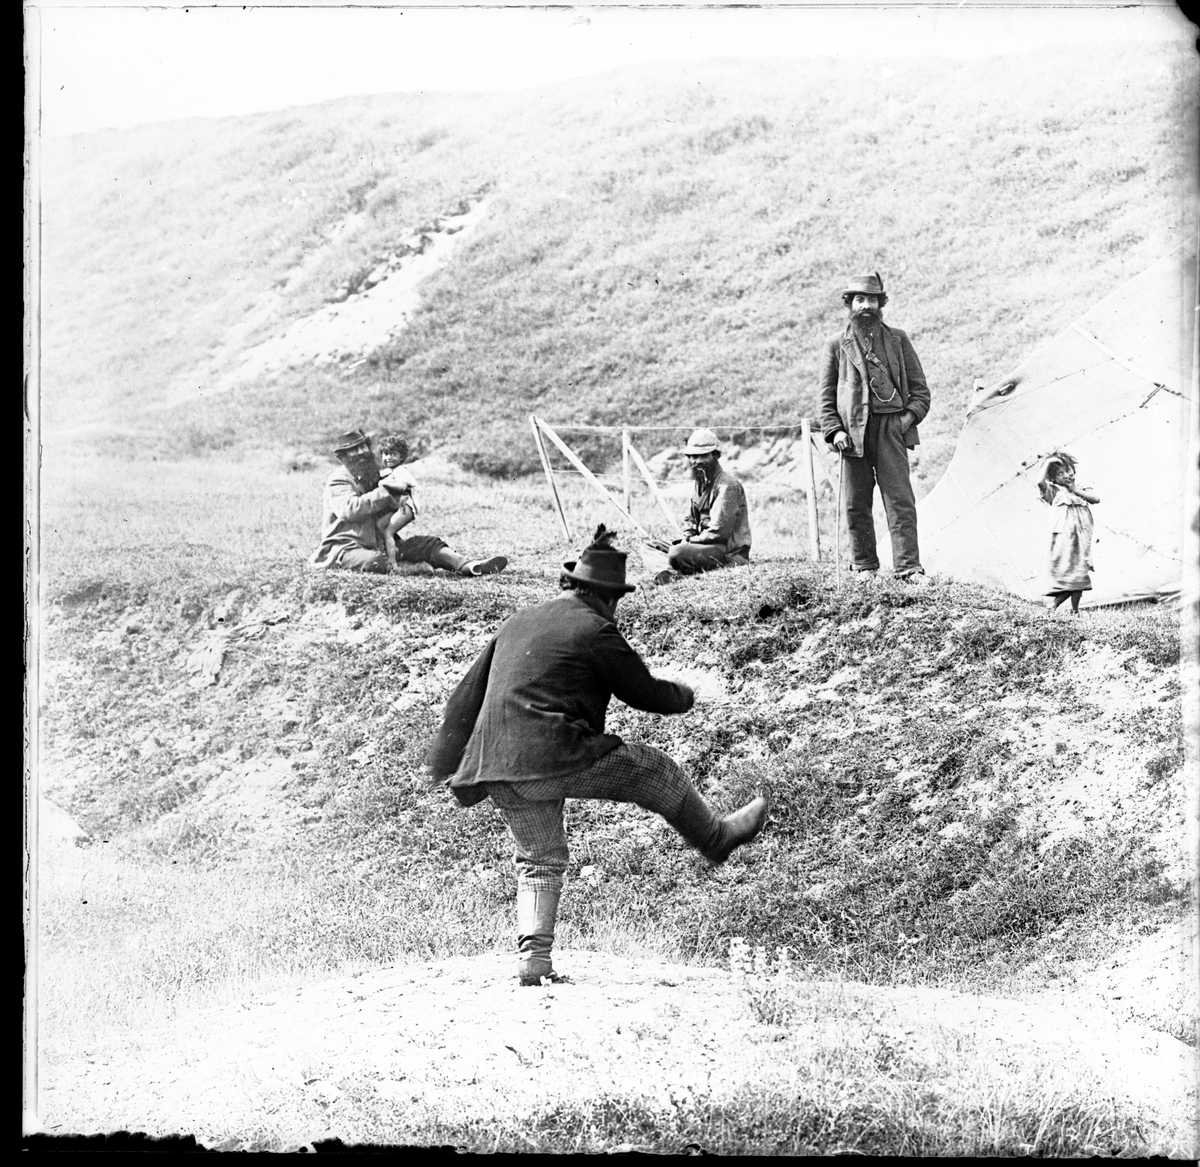 I en backe har ett romskt sällskap slagit läger. En man hoppar och skojar. Några ytterligare män ser pån honom tillsammans med några barn. I bakgrunden syns ett tält.